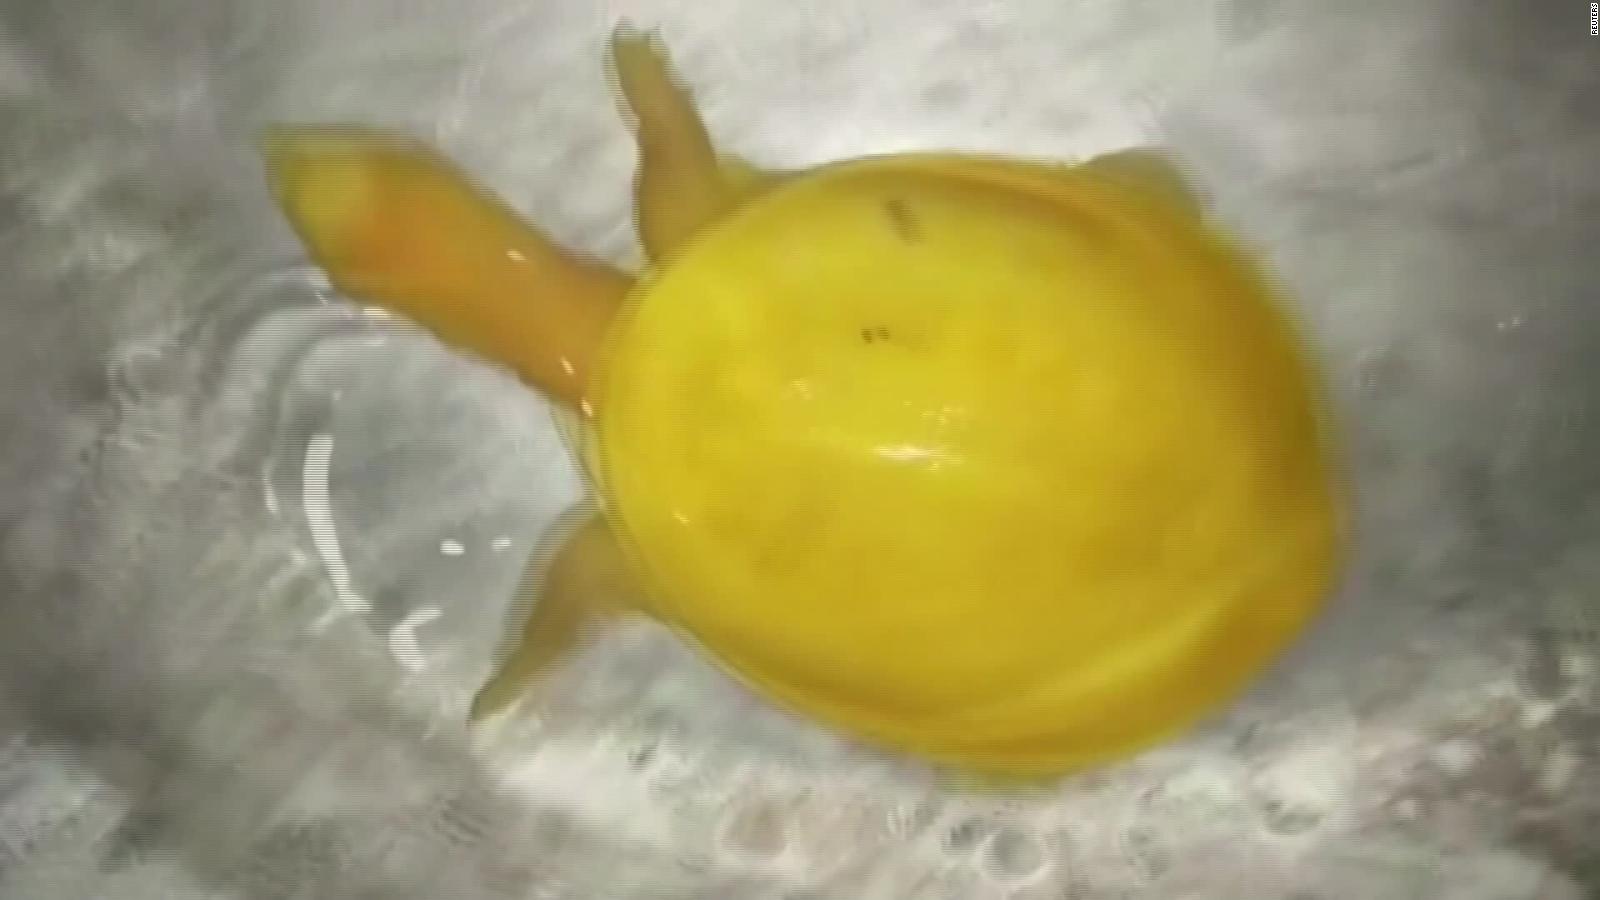 Hallan una tortuga amarilla que sería albina, según expertos | CNN